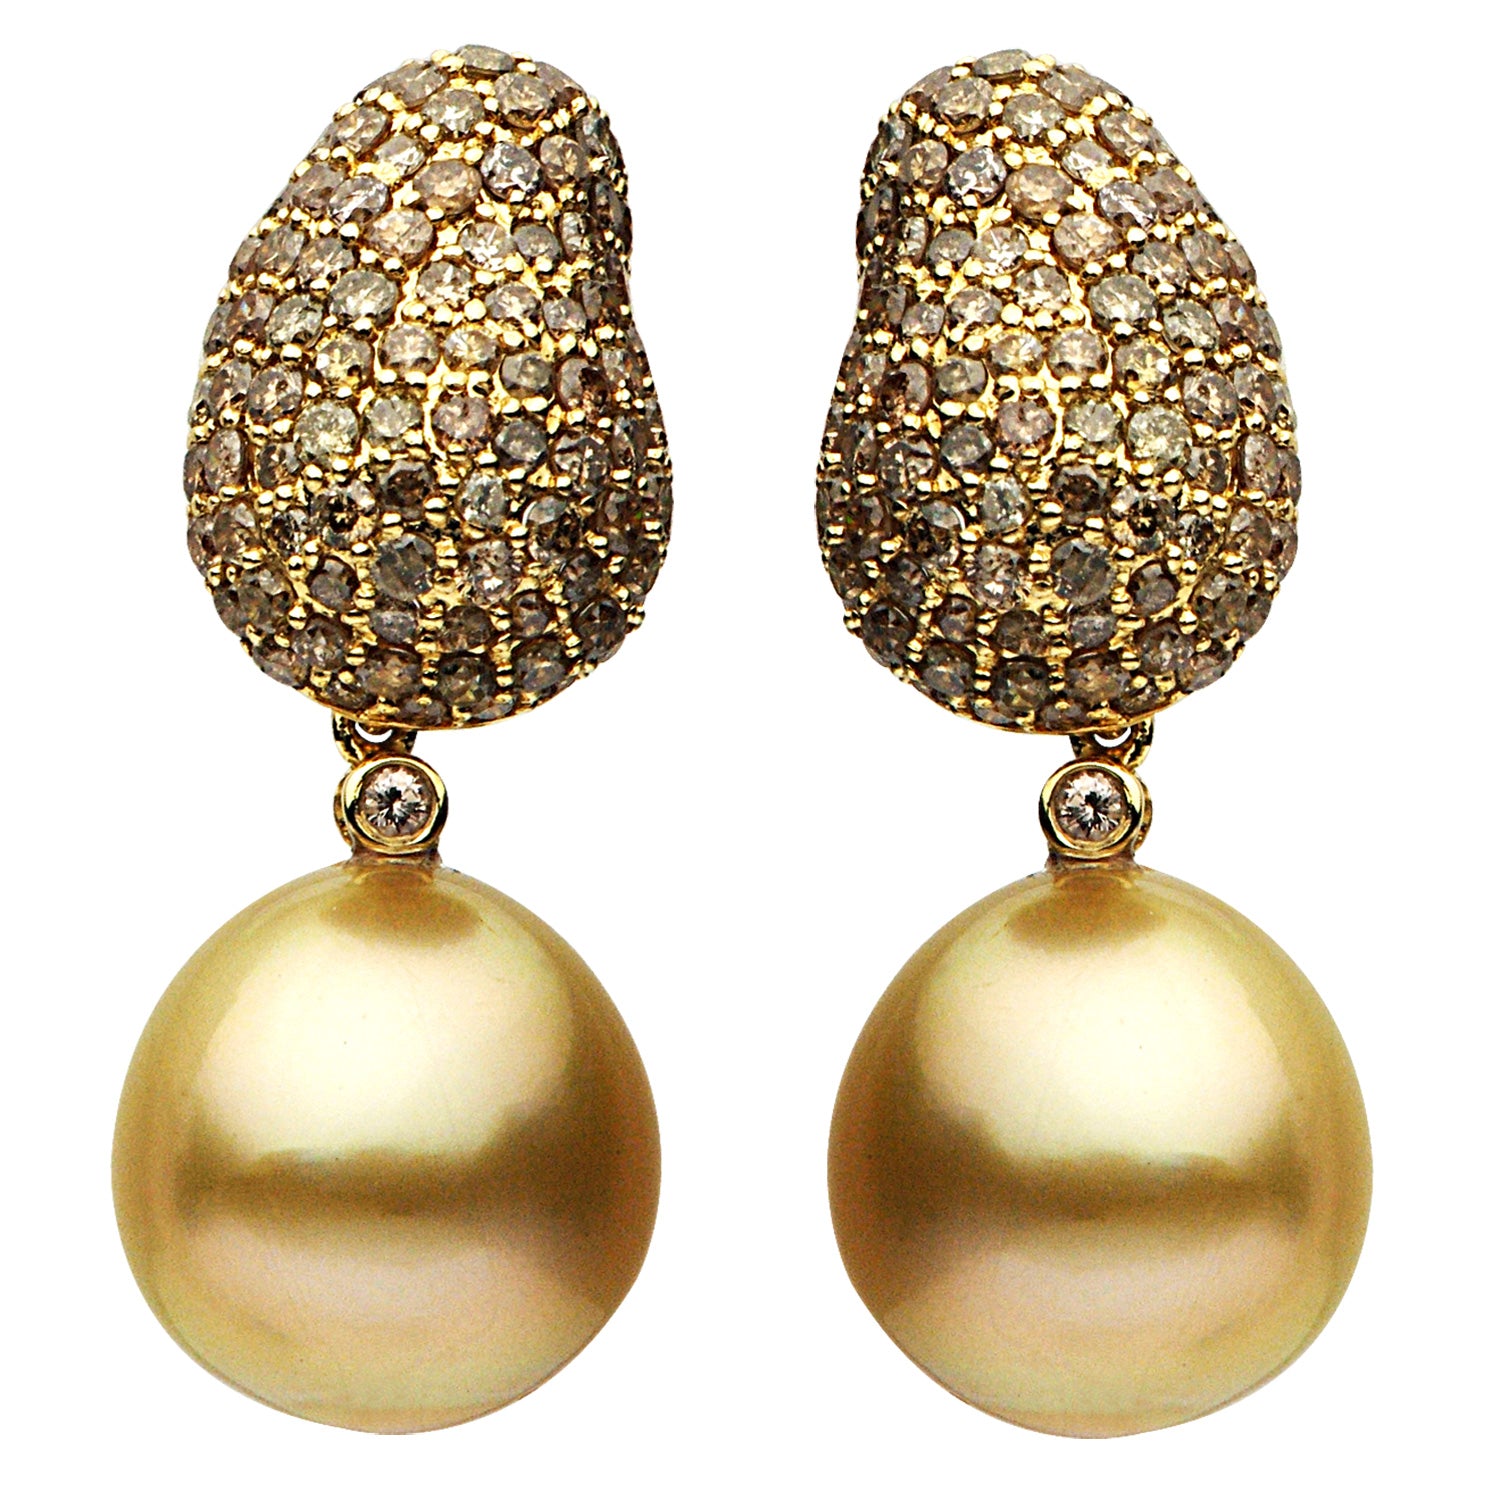 18KY Golden South Sea Pearl Earrings, 12-13mm